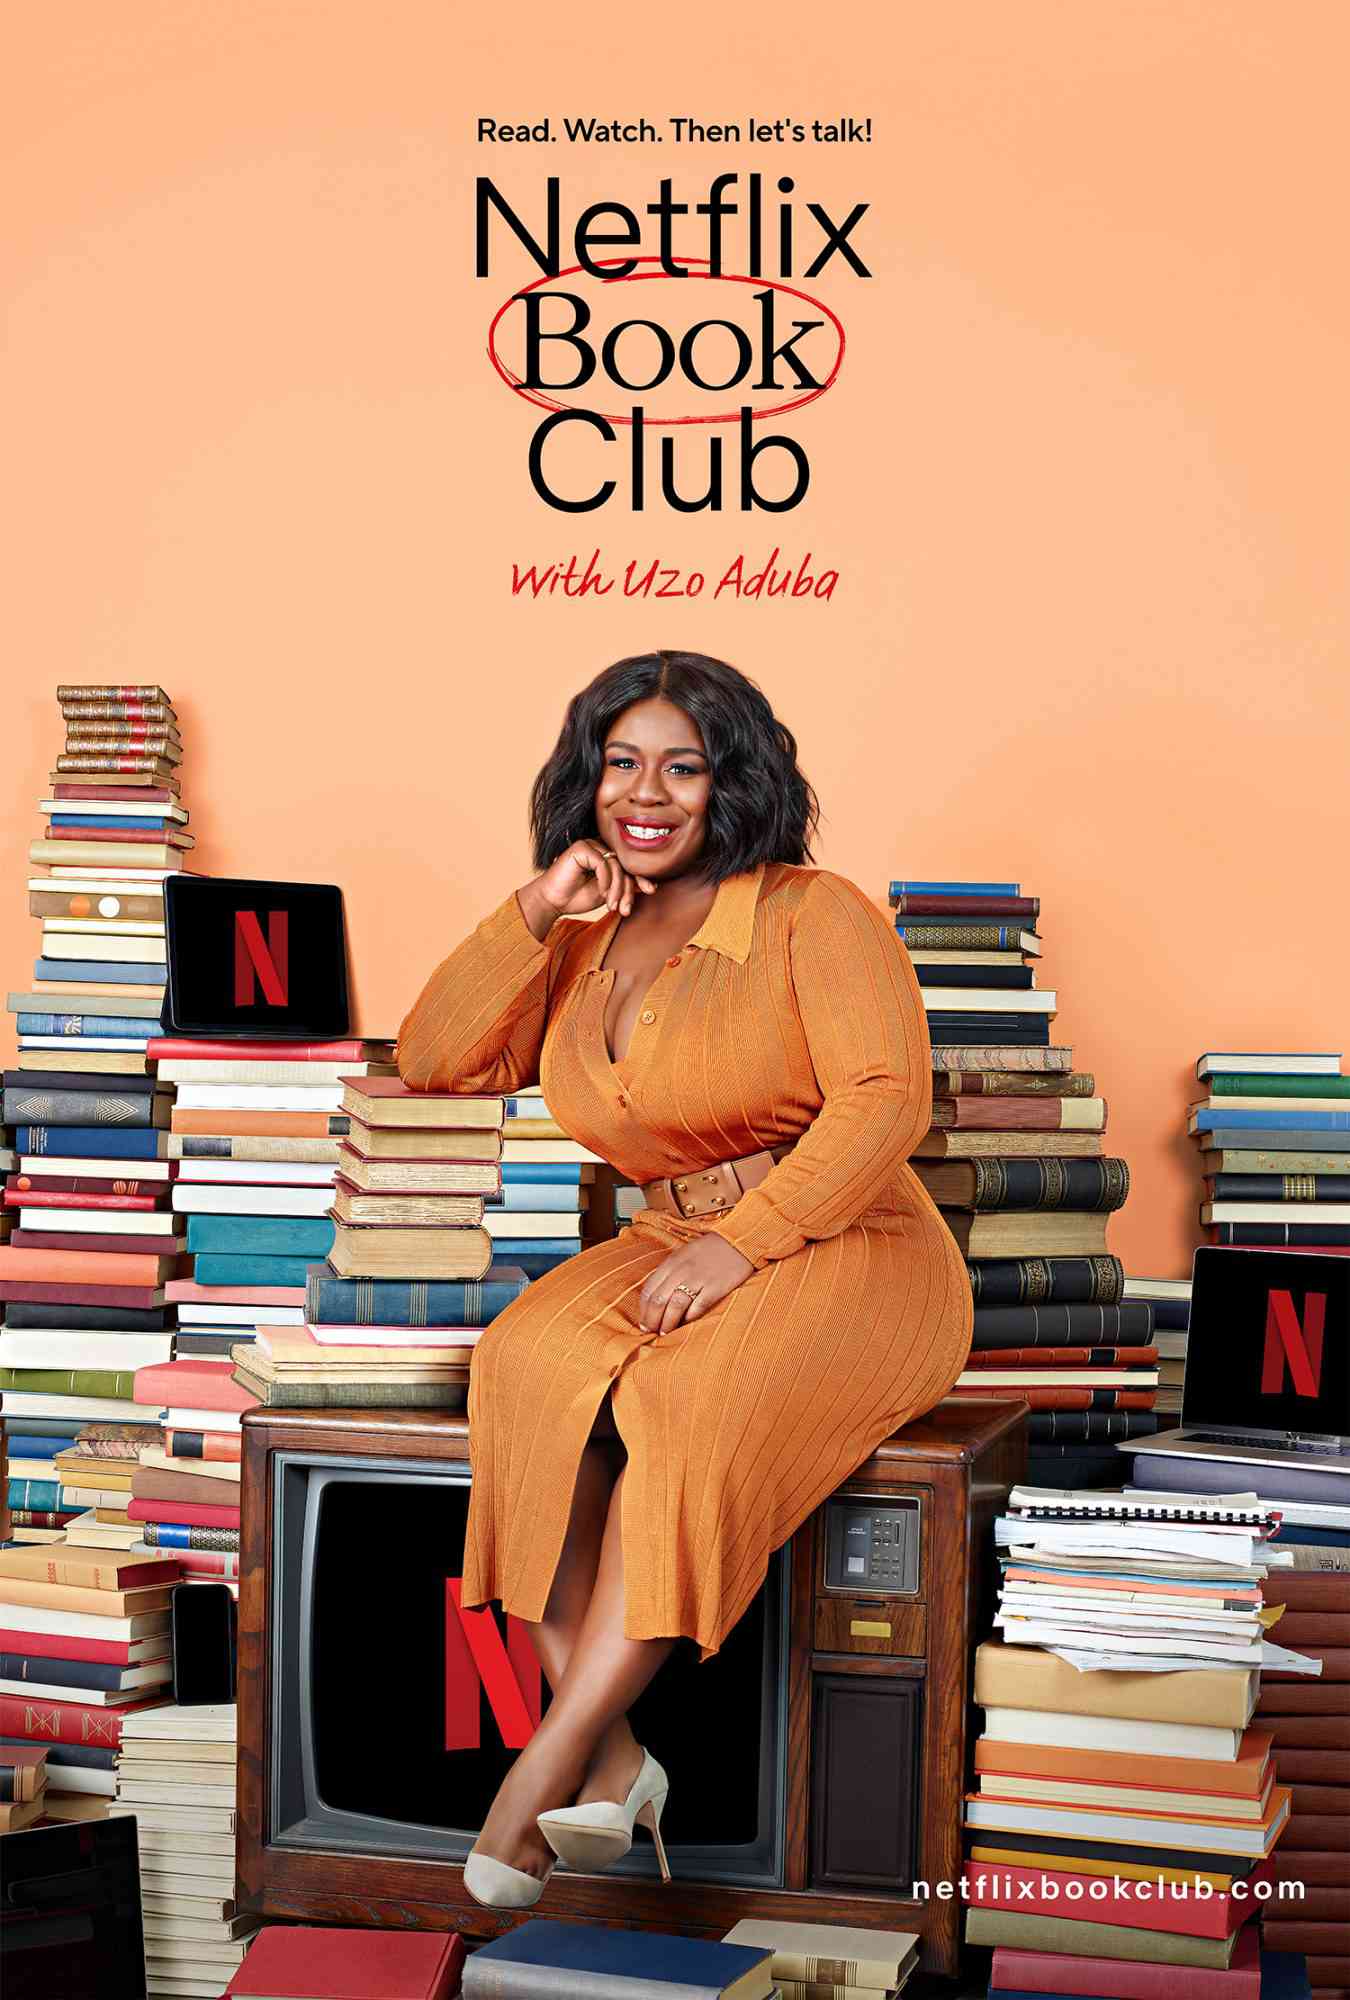 Netflix annuncia il Book Club per i suoi prossimi adattamenti per lo schermo ospitato da Uzo Aduba